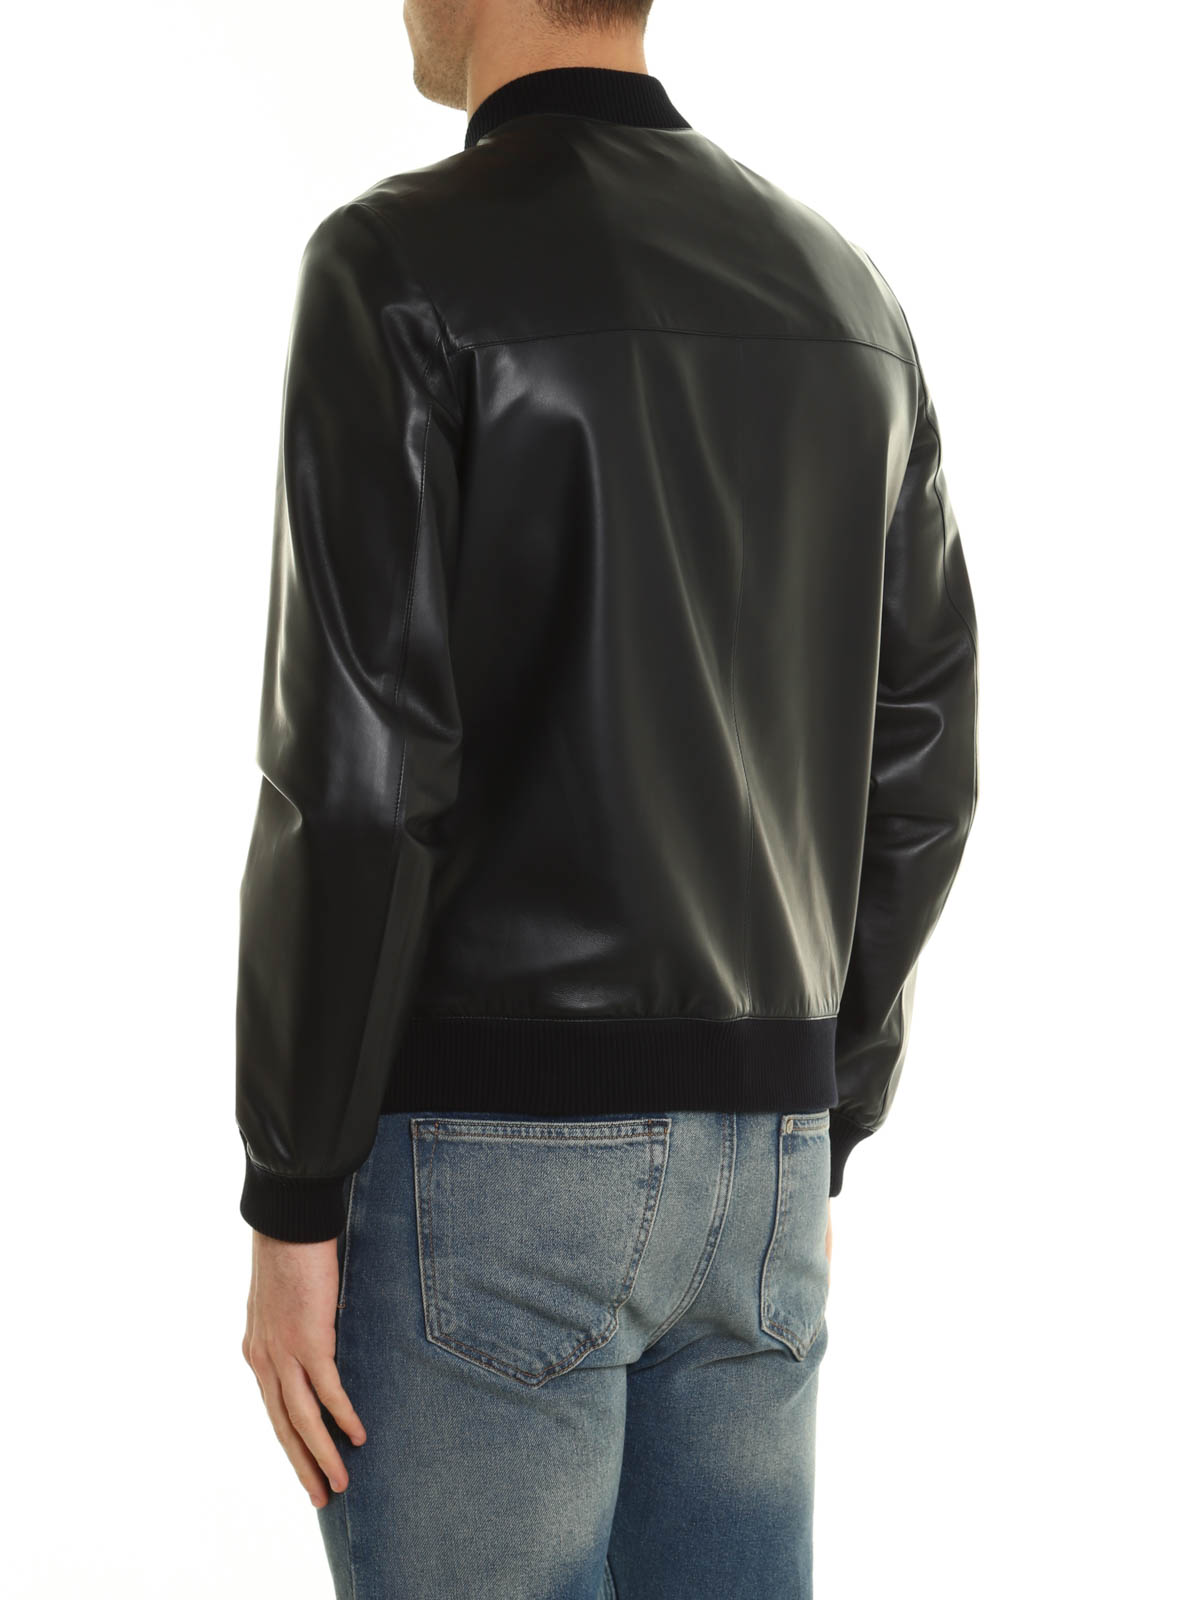 Leather jacket Prada - Reversible bomber jacket - UPV967038008 